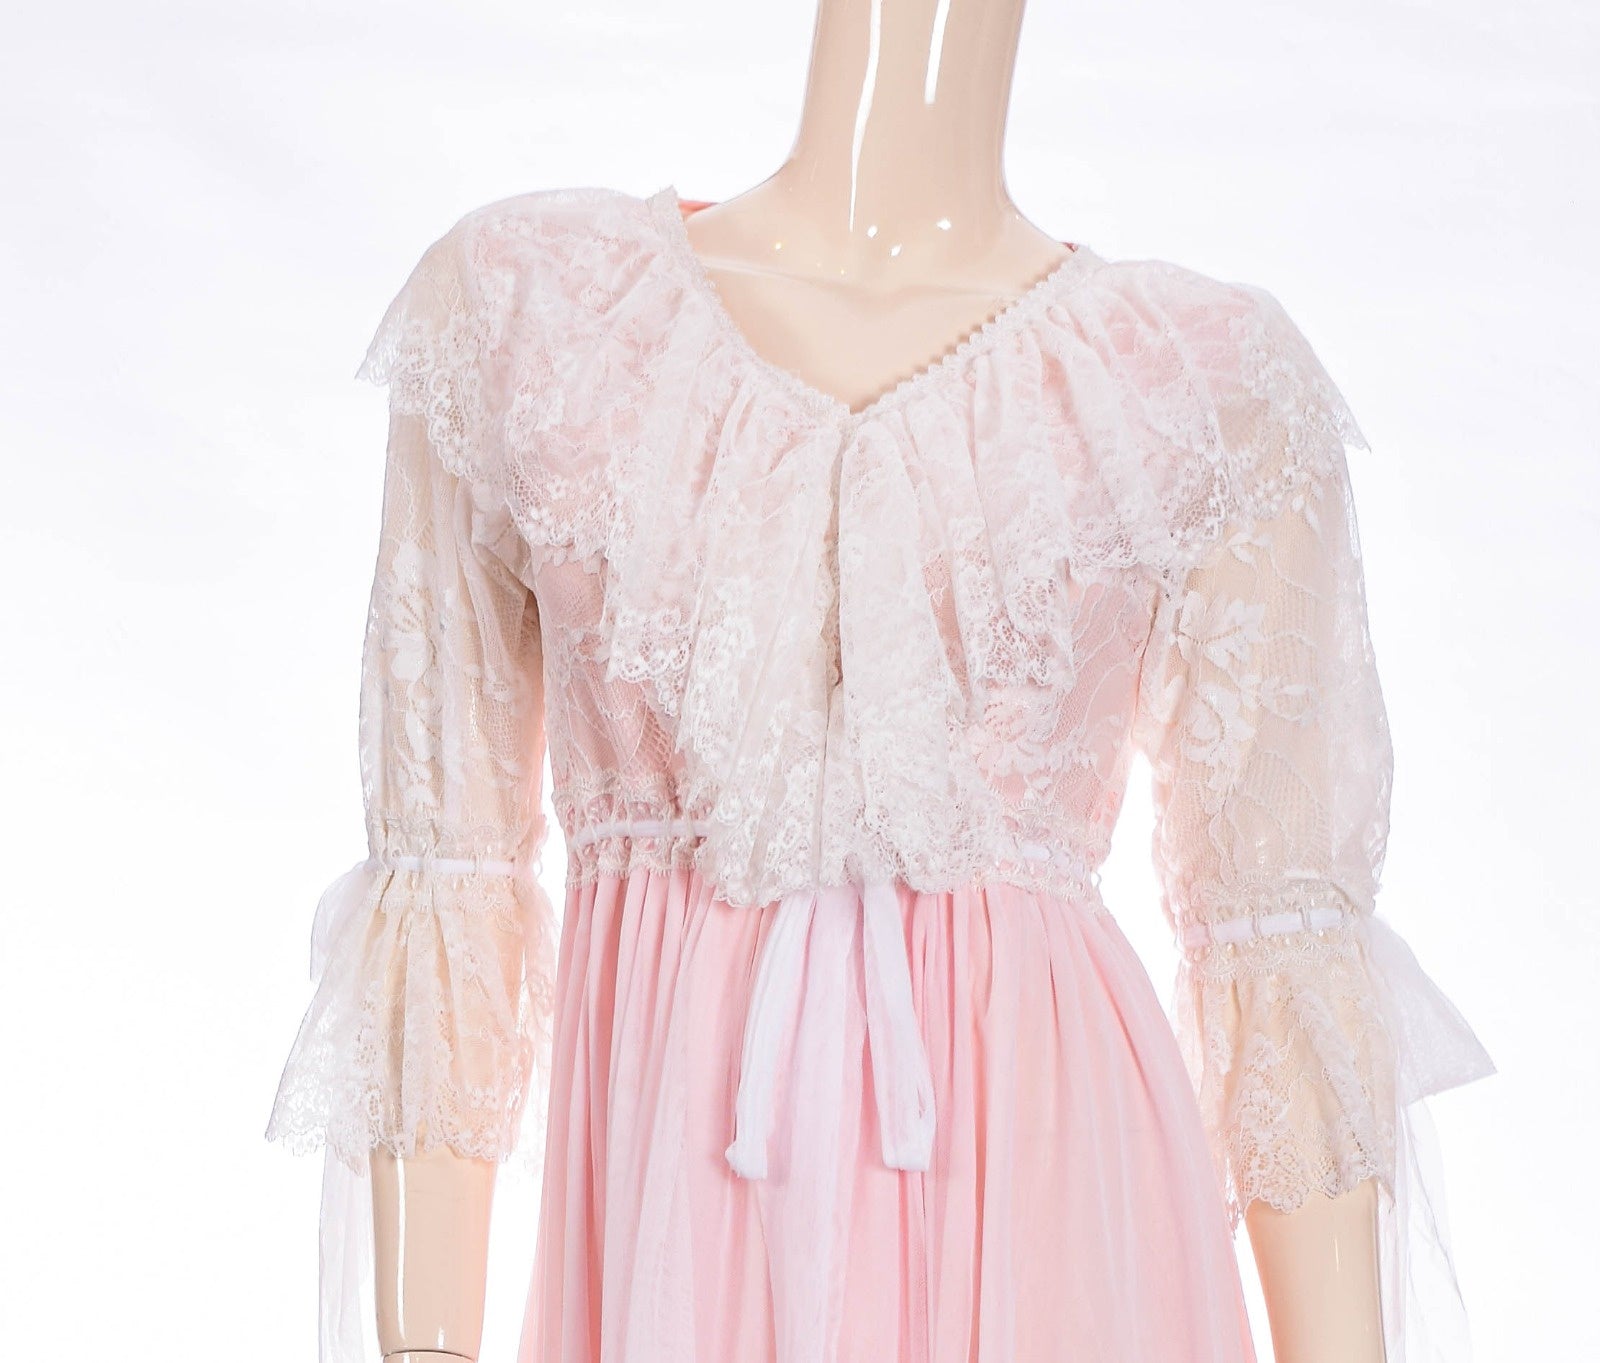 Lace Frill & Chiffon Night Dress - Light Pink Dress Coco Box 